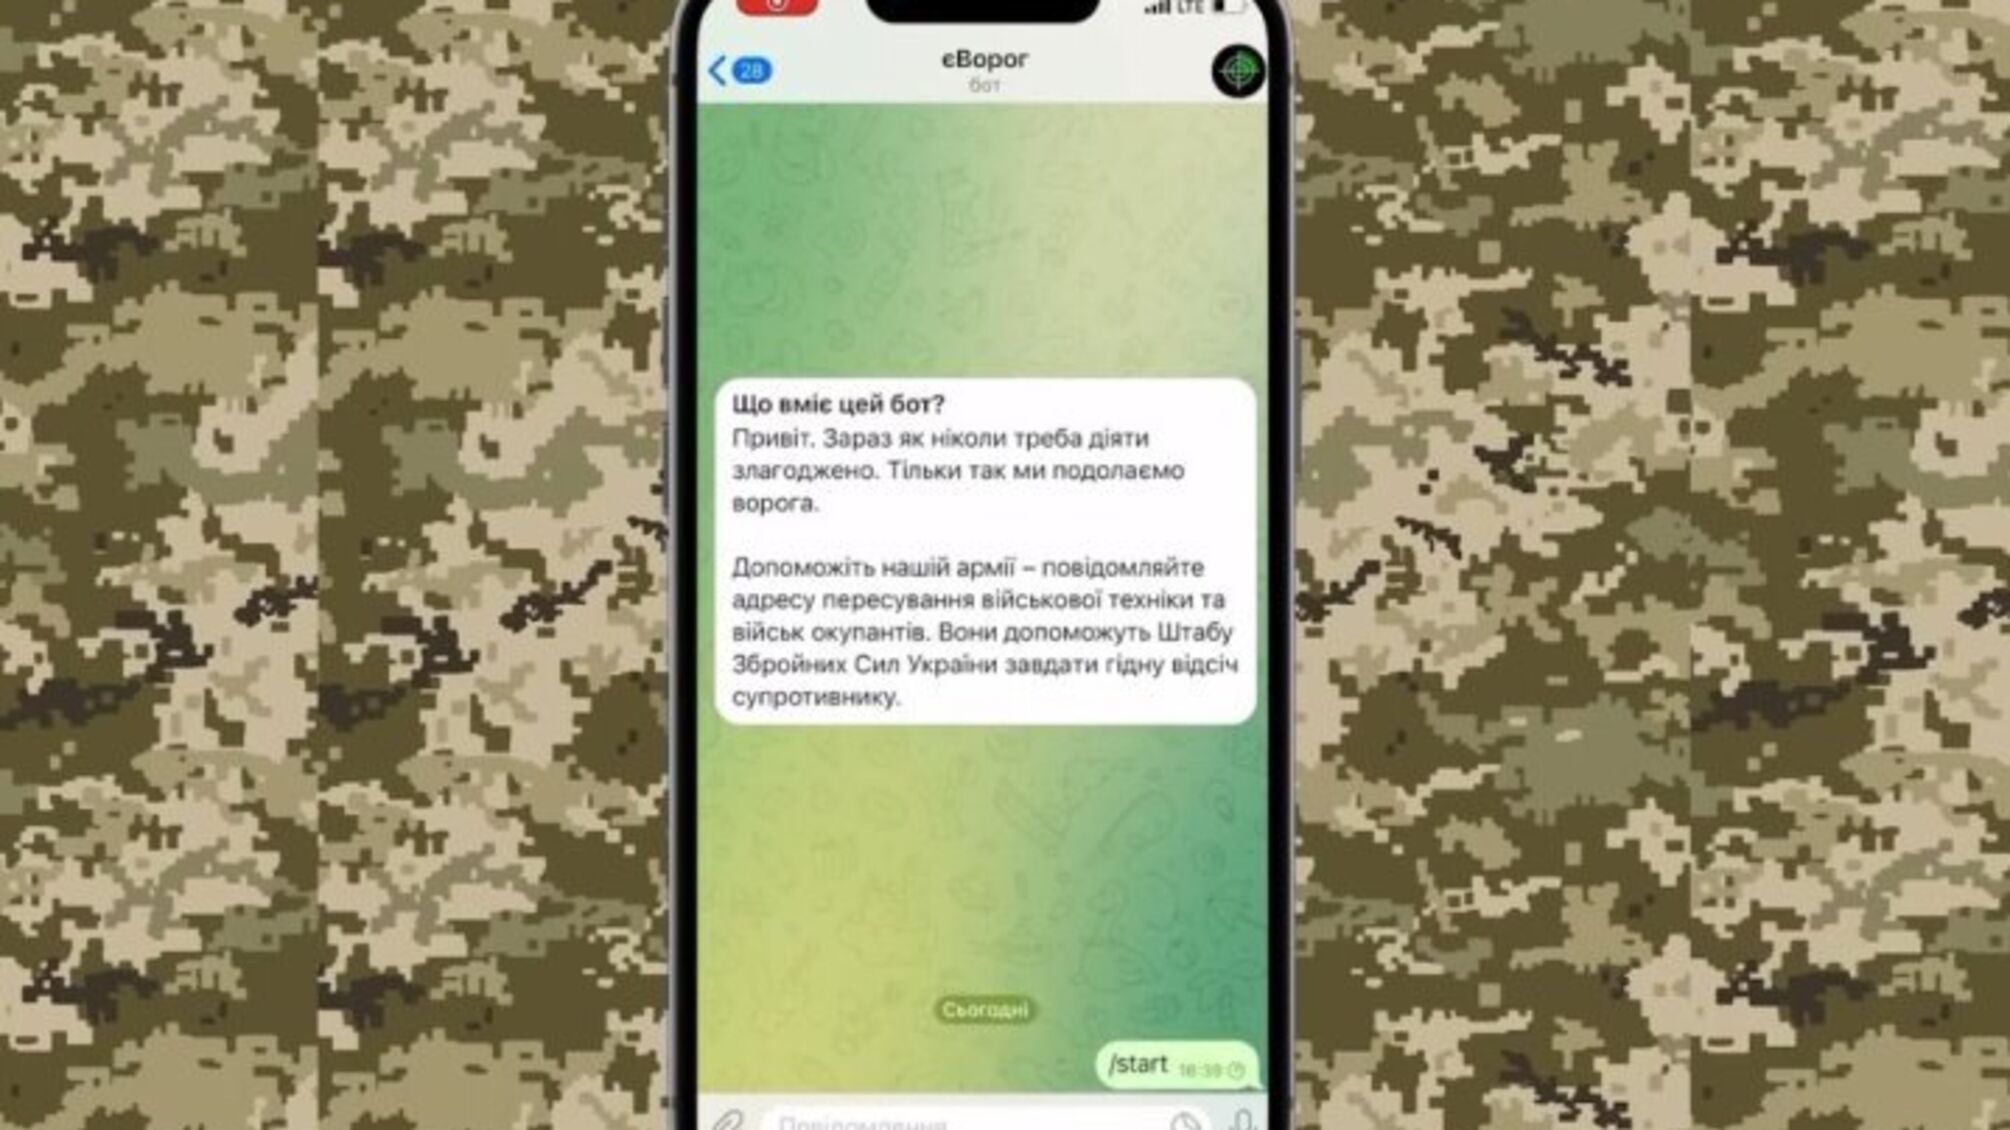 Telegram заблокировал чатбот 'еВорог', который использовался для сообщения о движении оккупантов, – ГУР